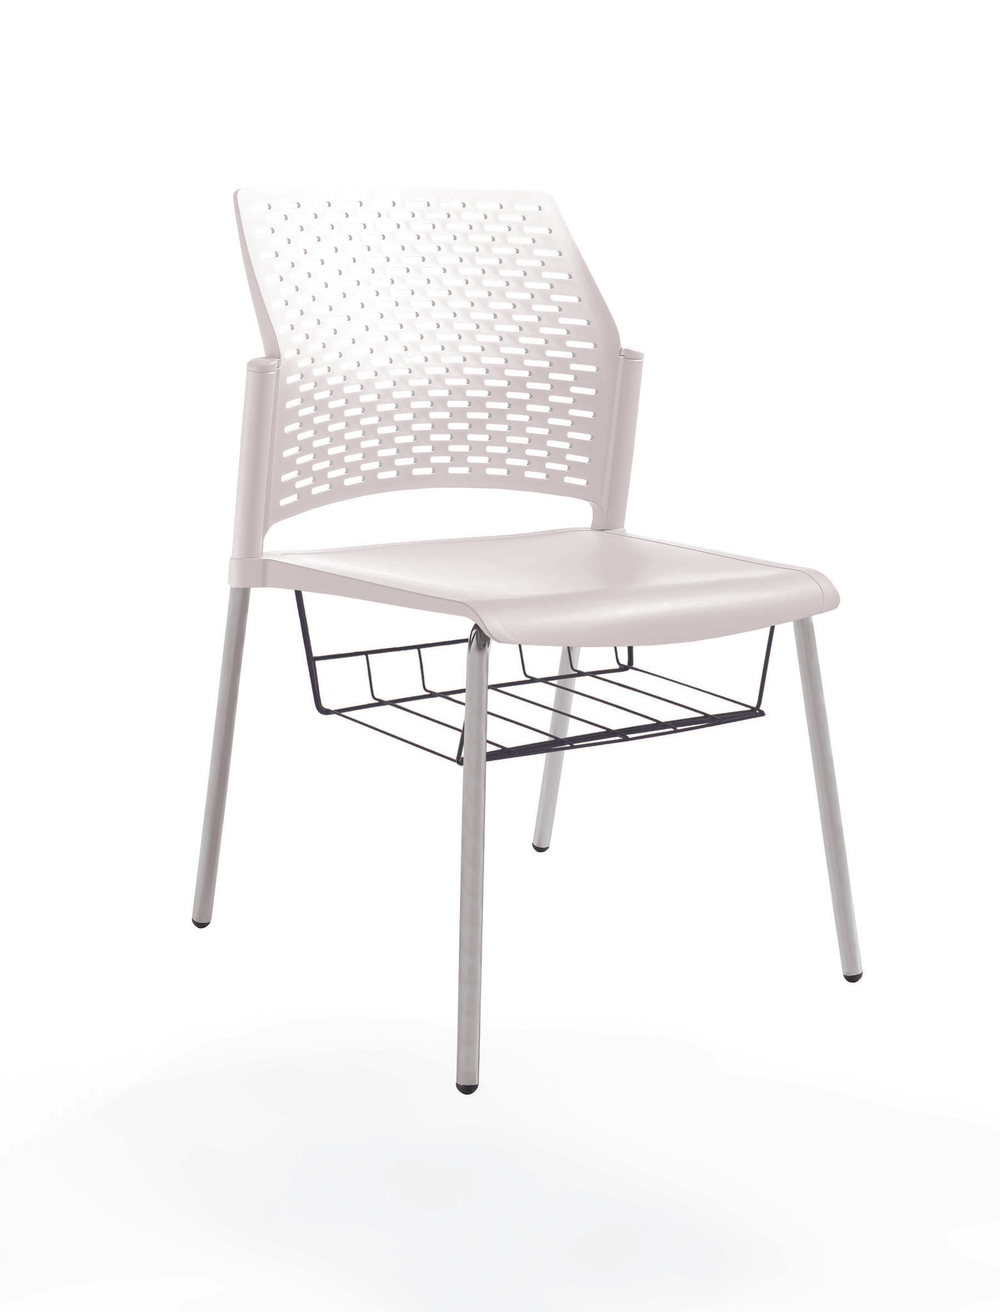 стул Rewind, каркас серый, пластик белый, без подлокотников, с подседельной корзиной